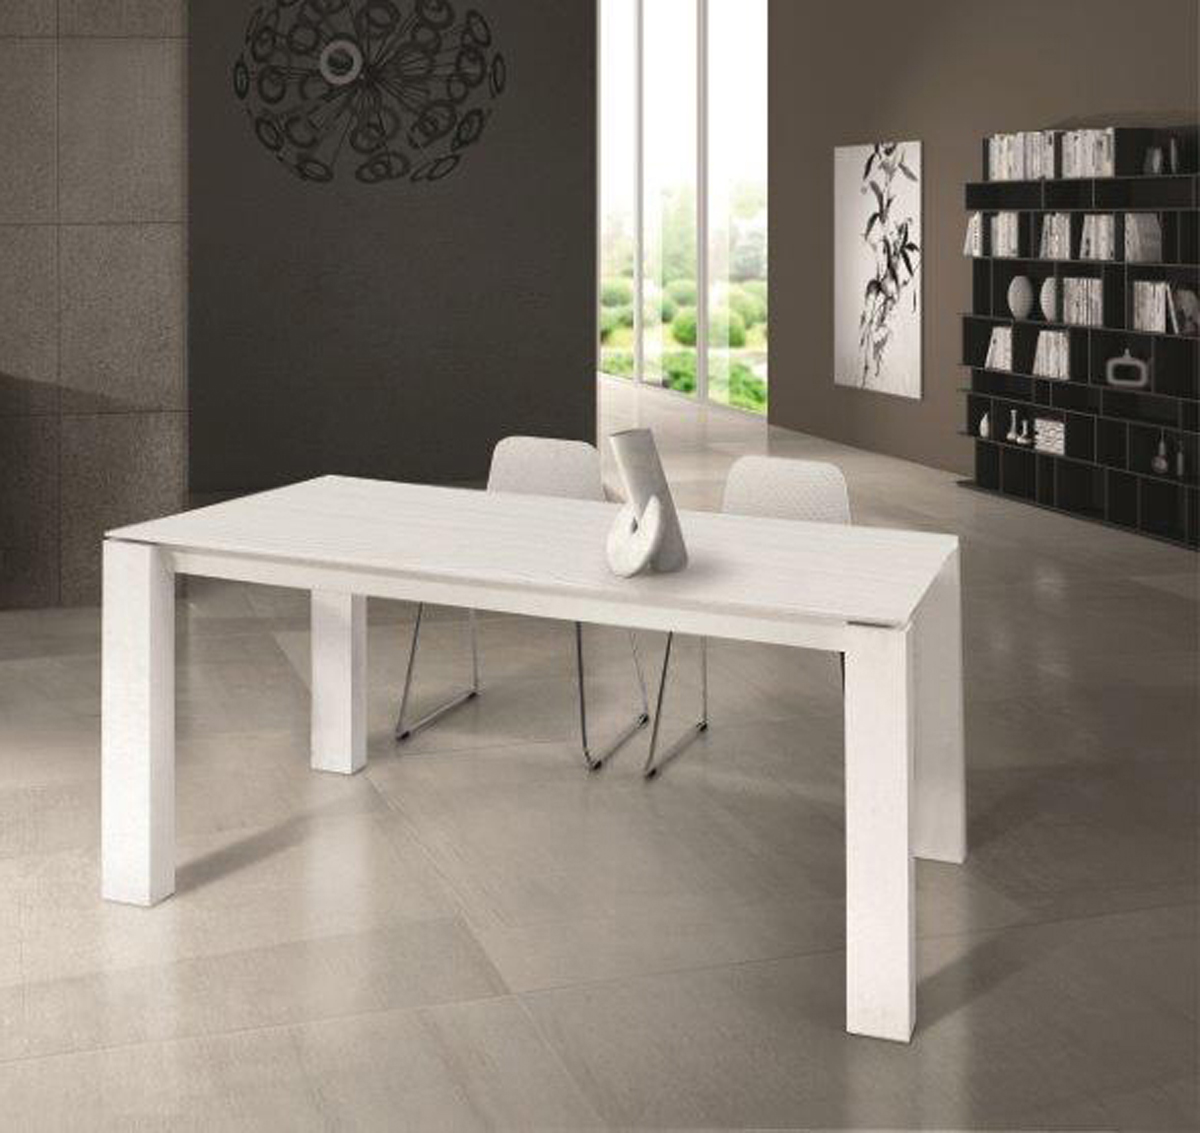 6 Wheel 1650 mm S 860 x 460 mm  Tavolini cambiadoras in legno legno S Brevi Idea legno colore: bianco 4 Drawer colore: bianco legno tavolo fasciatoio  